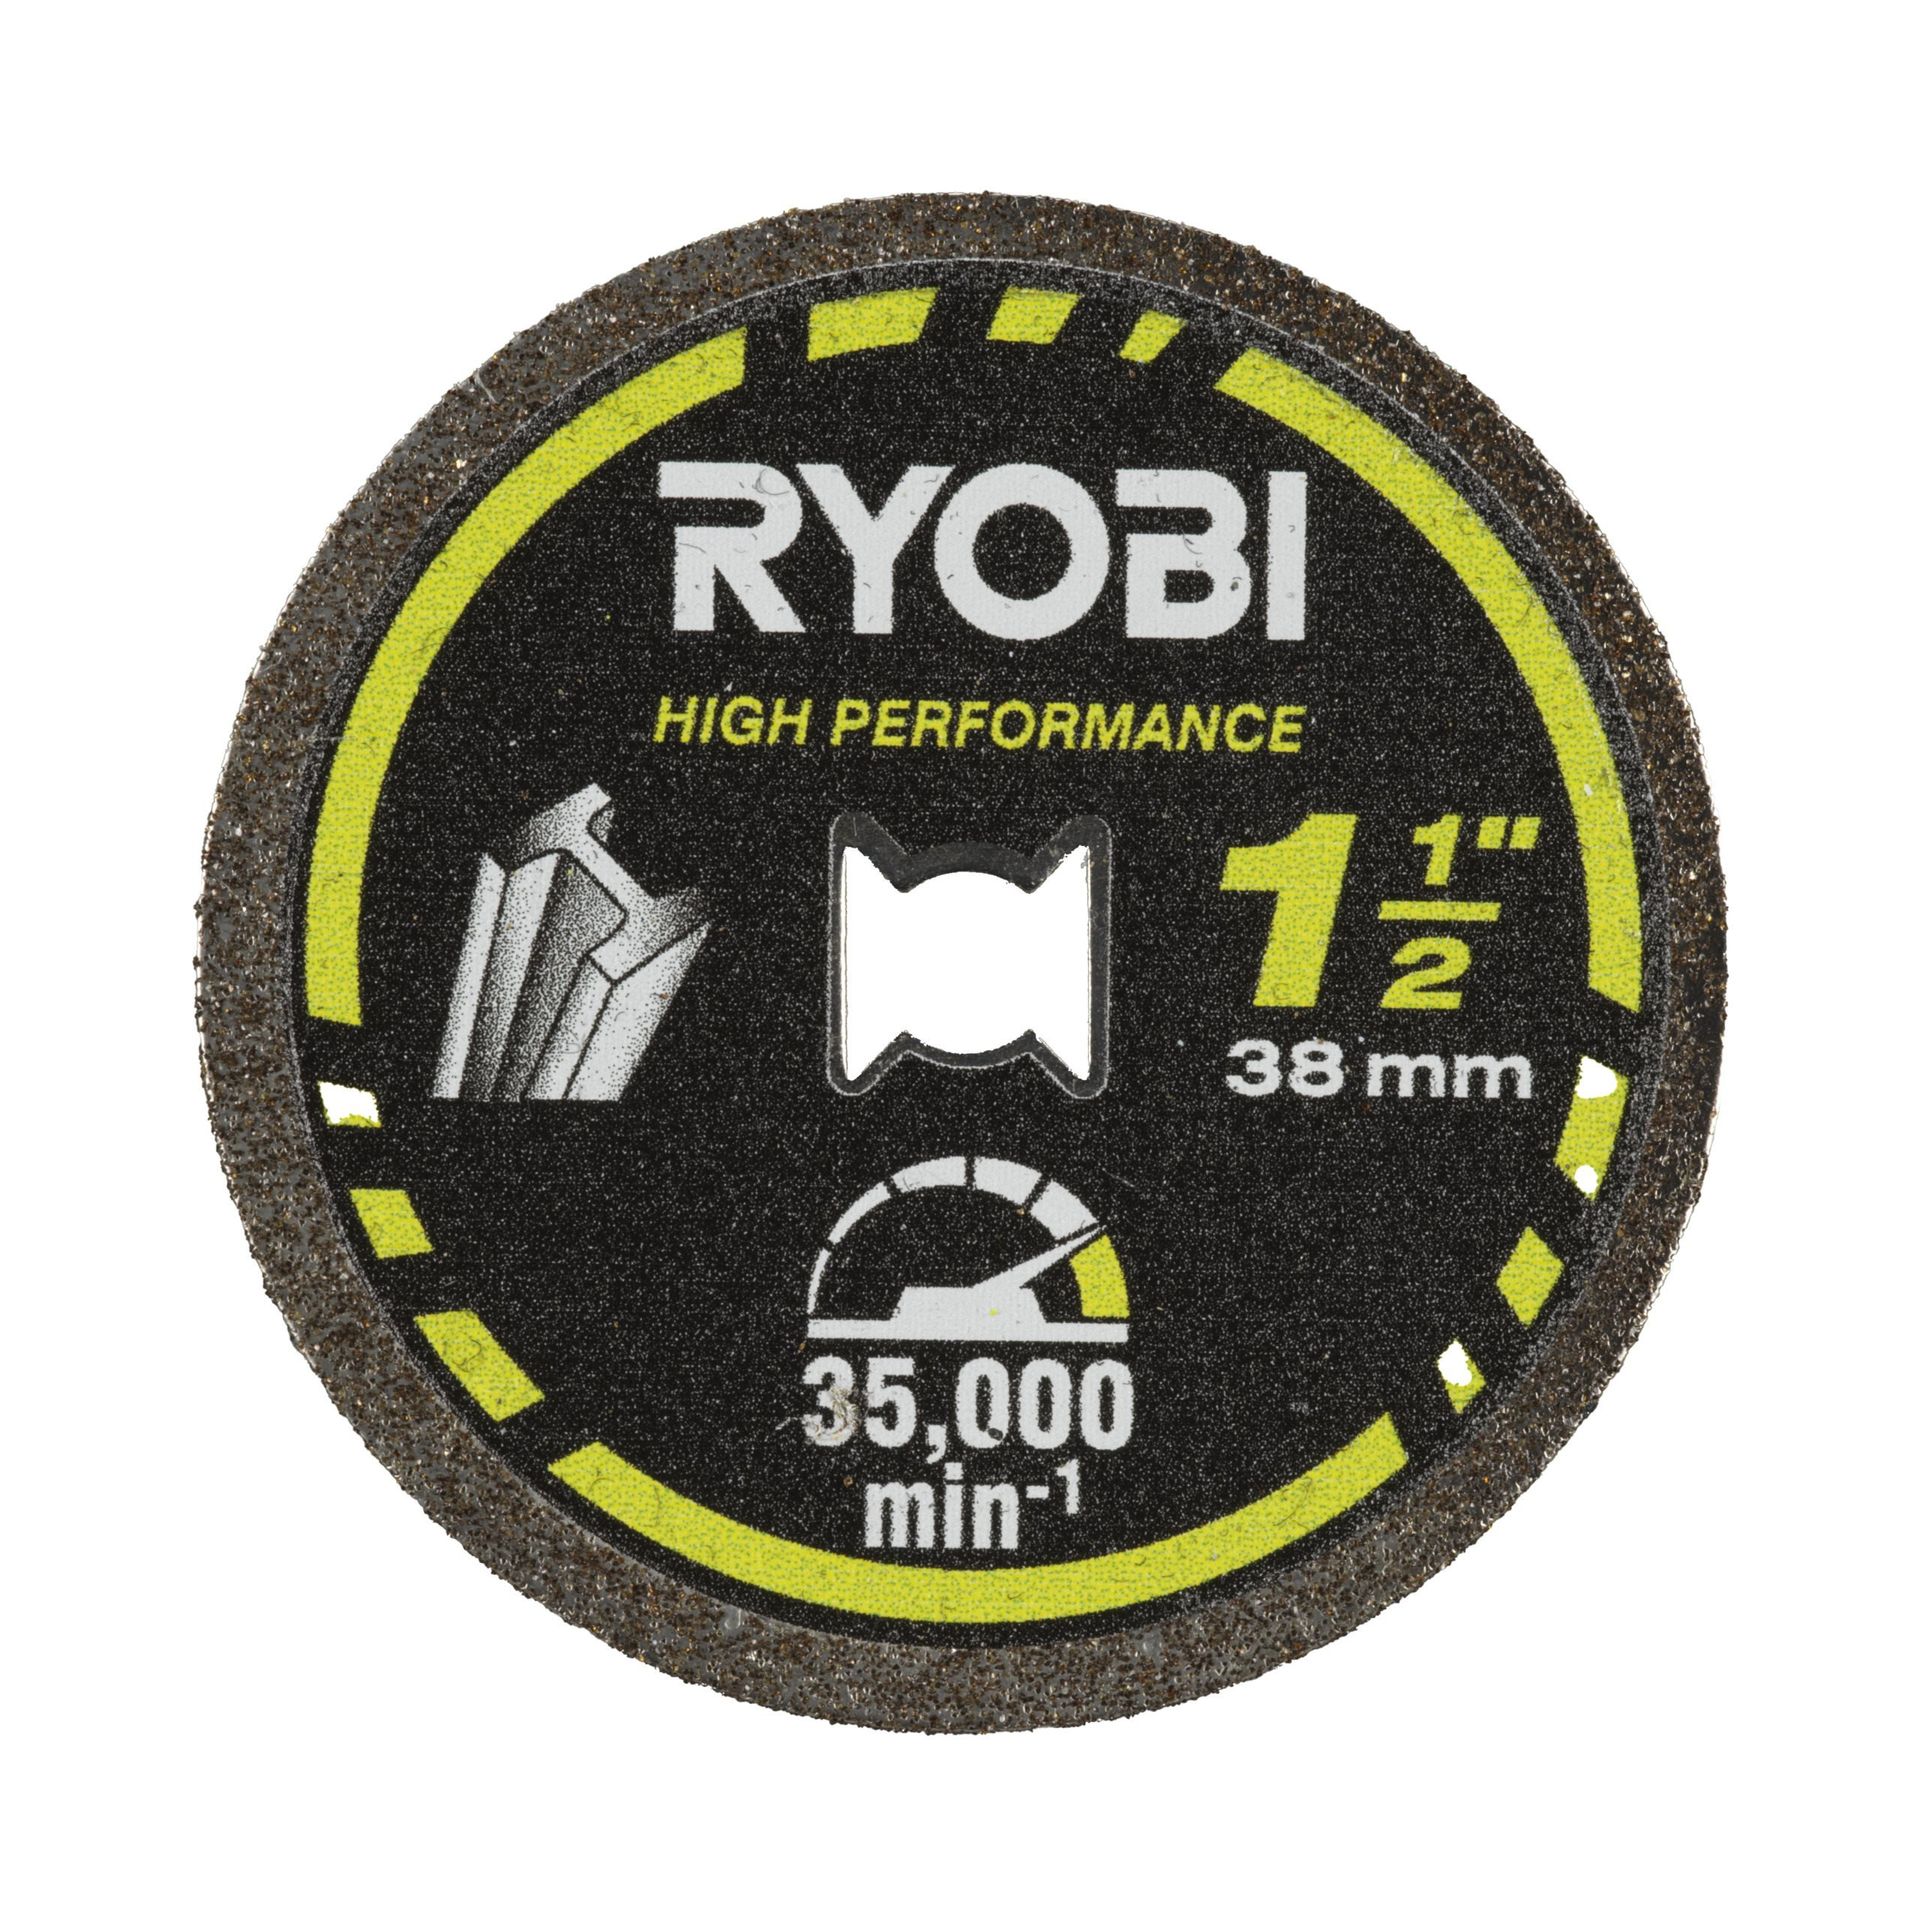 Ryobi Tarcza tnąca do metalu 38 mm z blokadą skrętu | RAR303